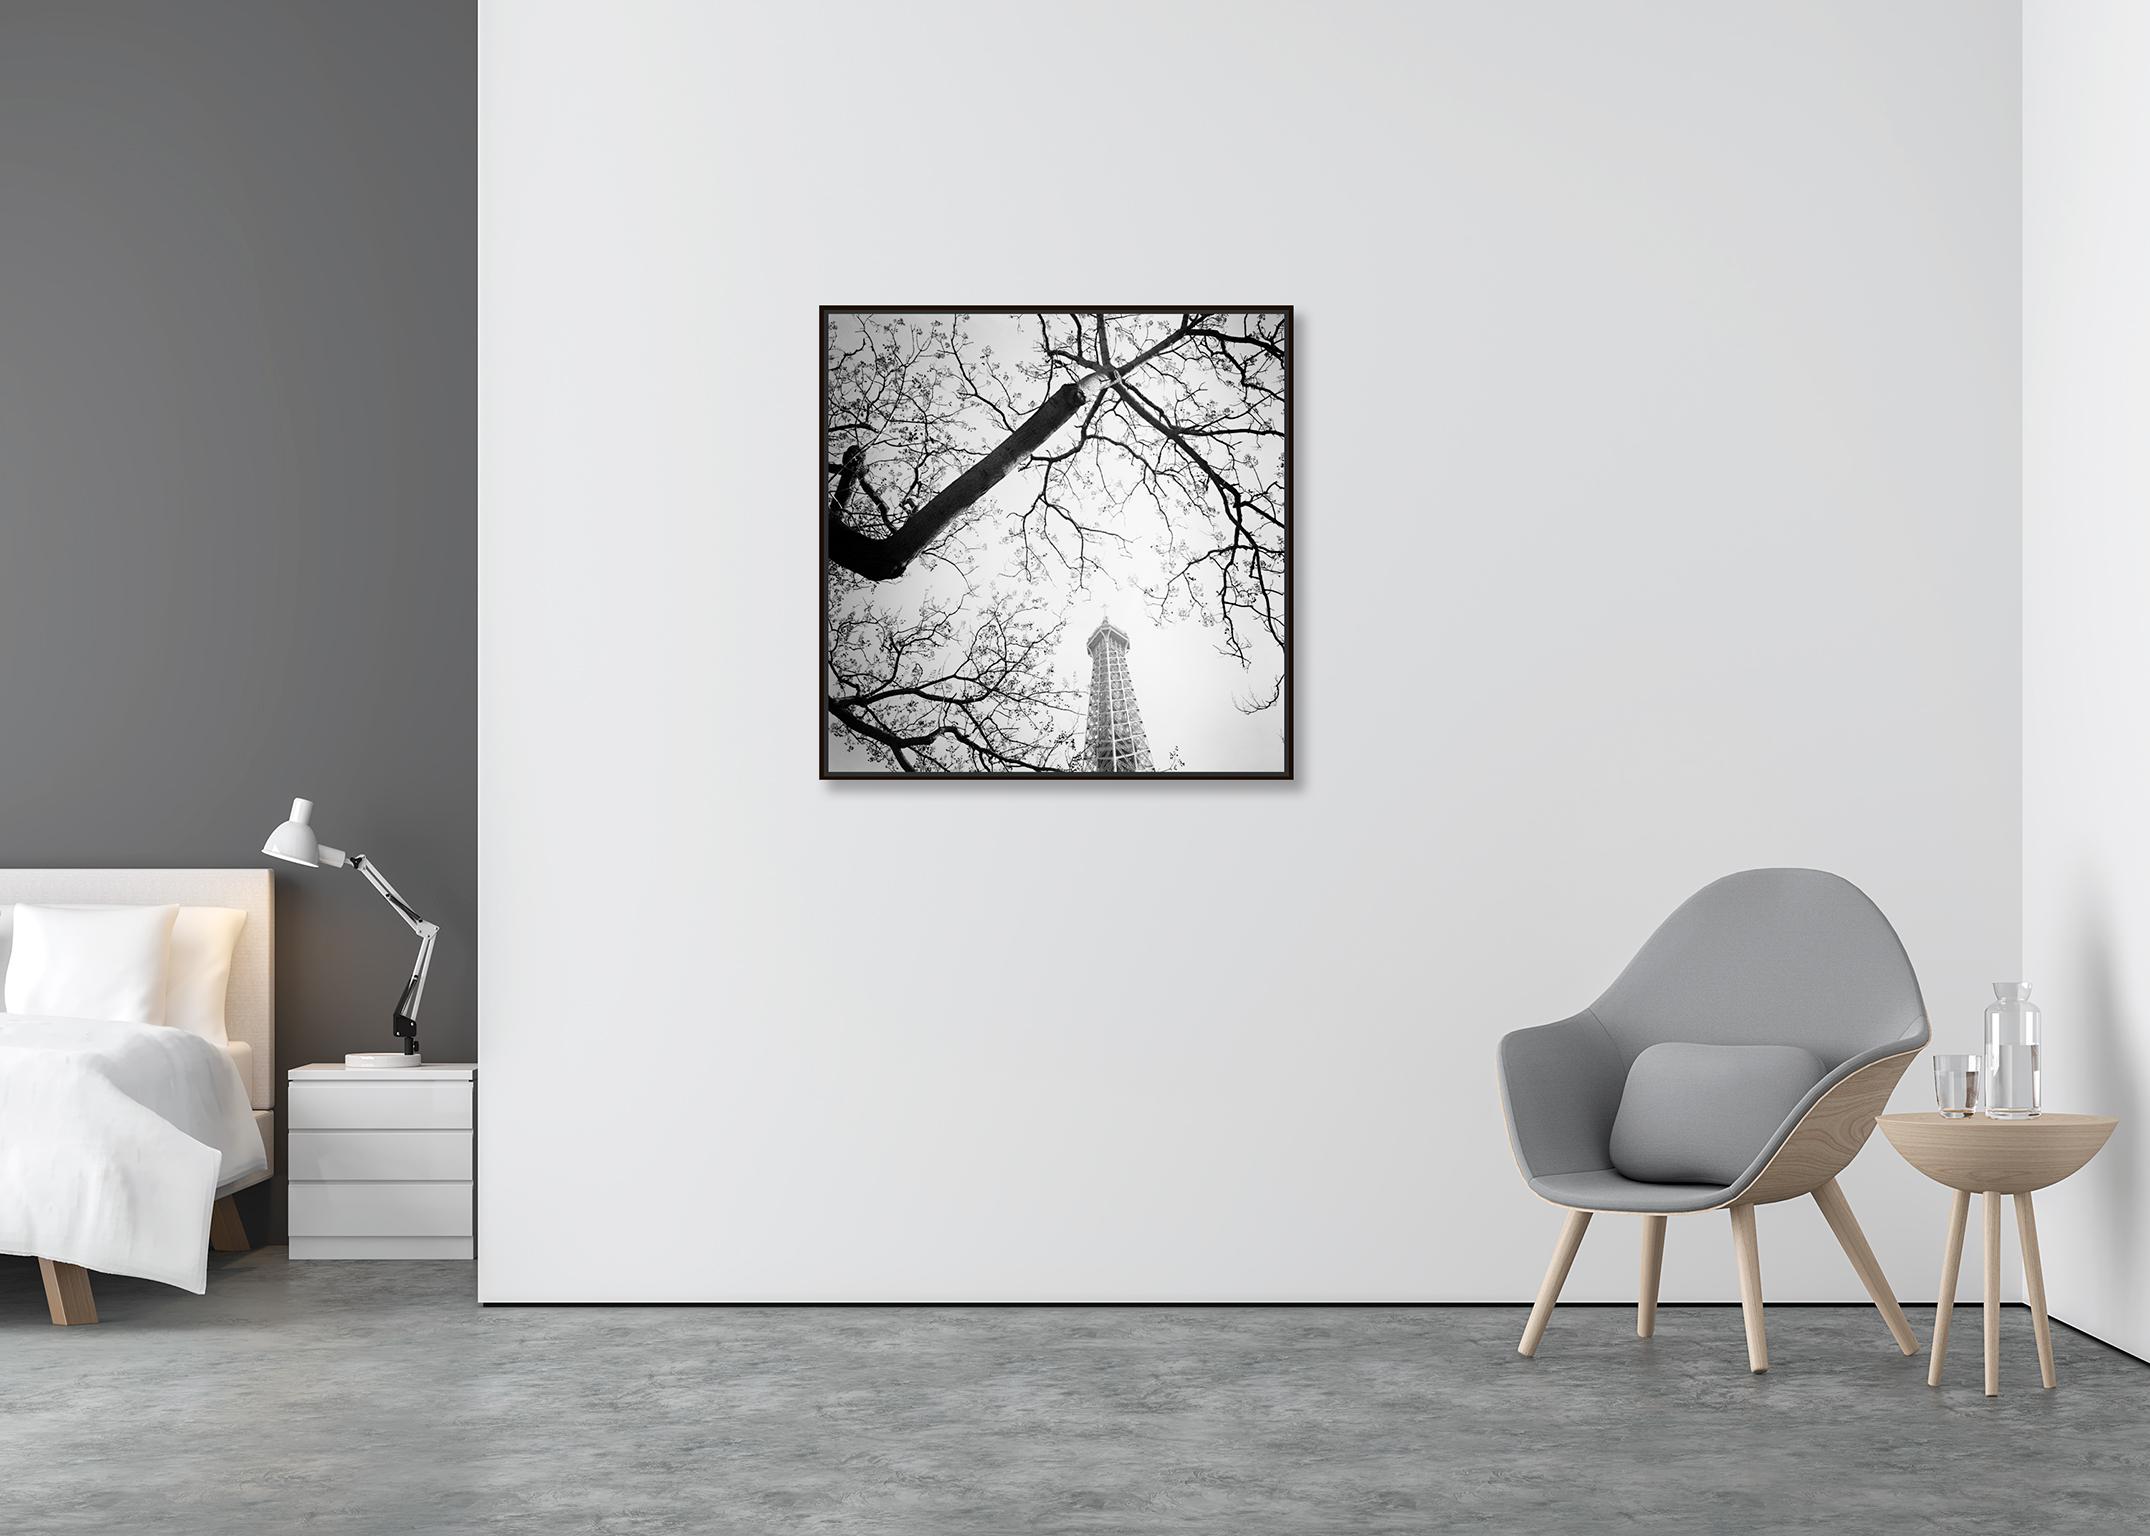 Baum und der Turm, Paris, Frankreich, Schwarz-Weiß-Kunstfotografie, Landschaft (Zeitgenössisch), Photograph, von Gerald Berghammer, Ina Forstinger